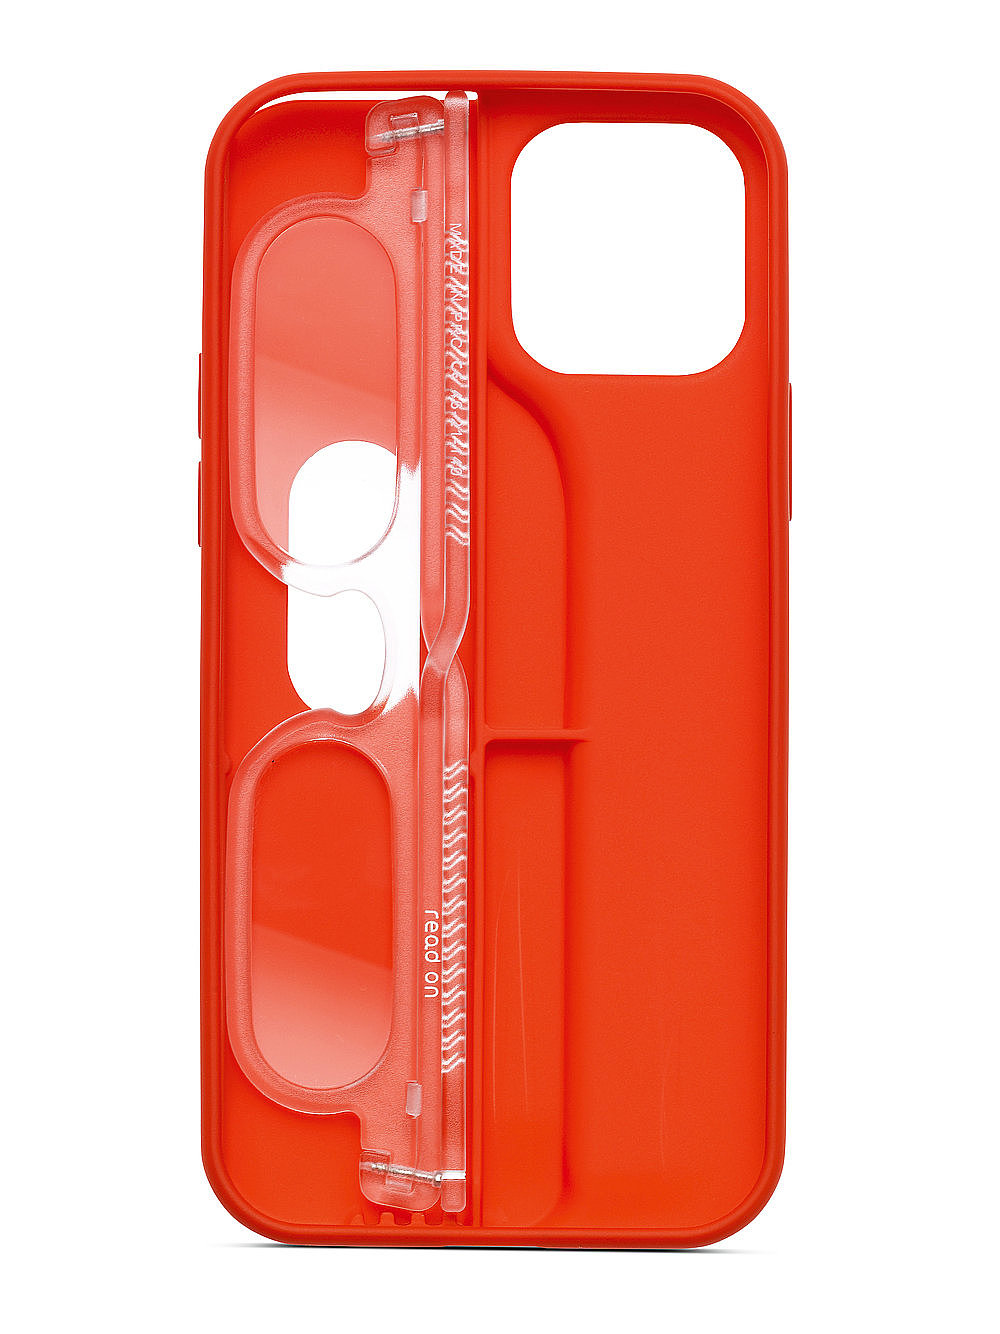 2023红点产品设计大奖，豪华设计和生活方式，带老花镜的iPhone外壳，